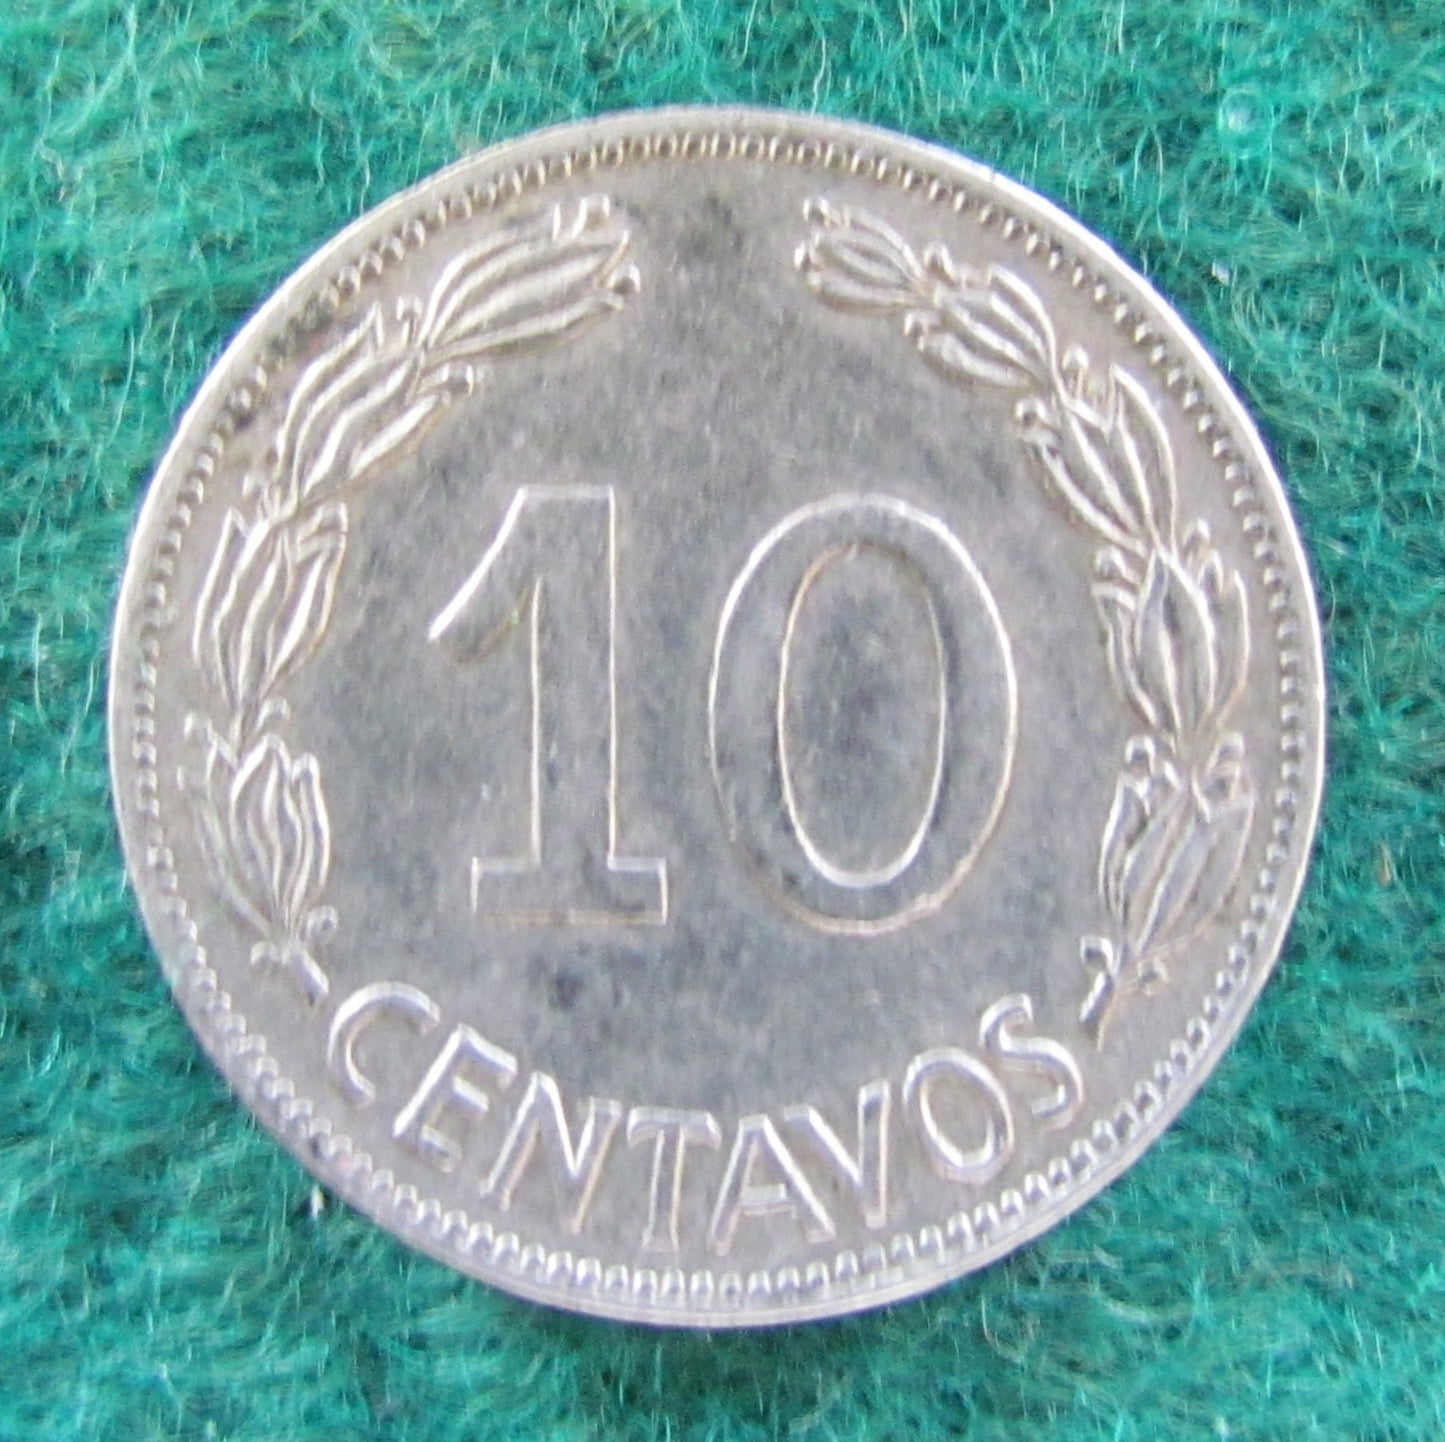 Ecuador 1964 10 Centavos Coin - Circulated